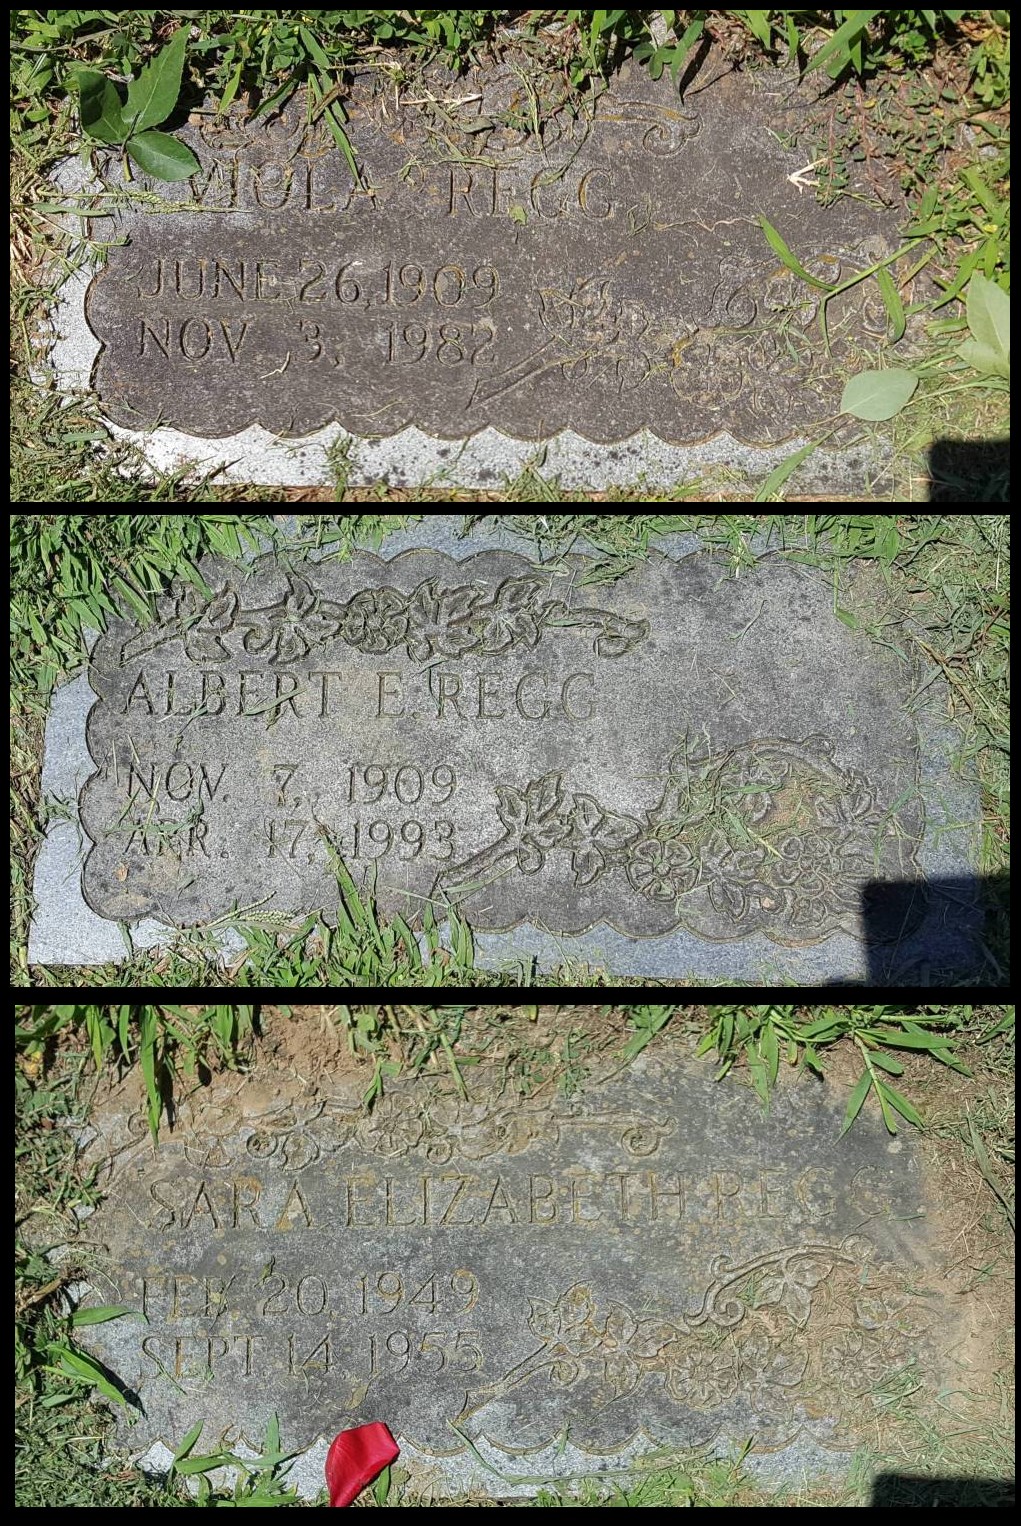 Grave-REGG Viola and Albert